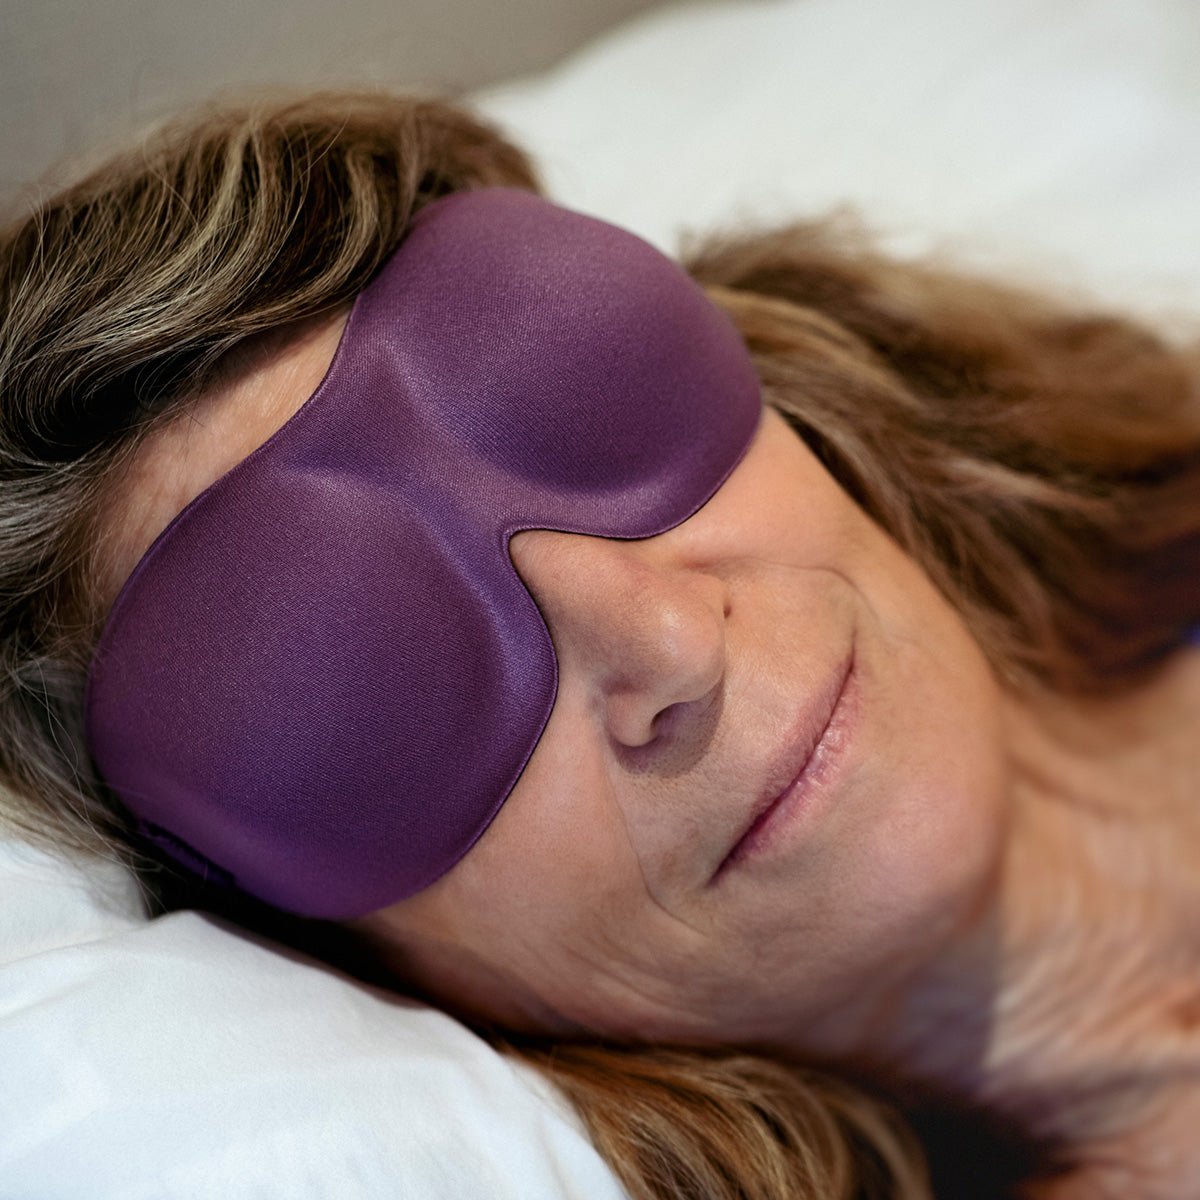 NIDRA DEEP REST EYE MASK: Luxury Sleep Mask with Contoured Shape - Black